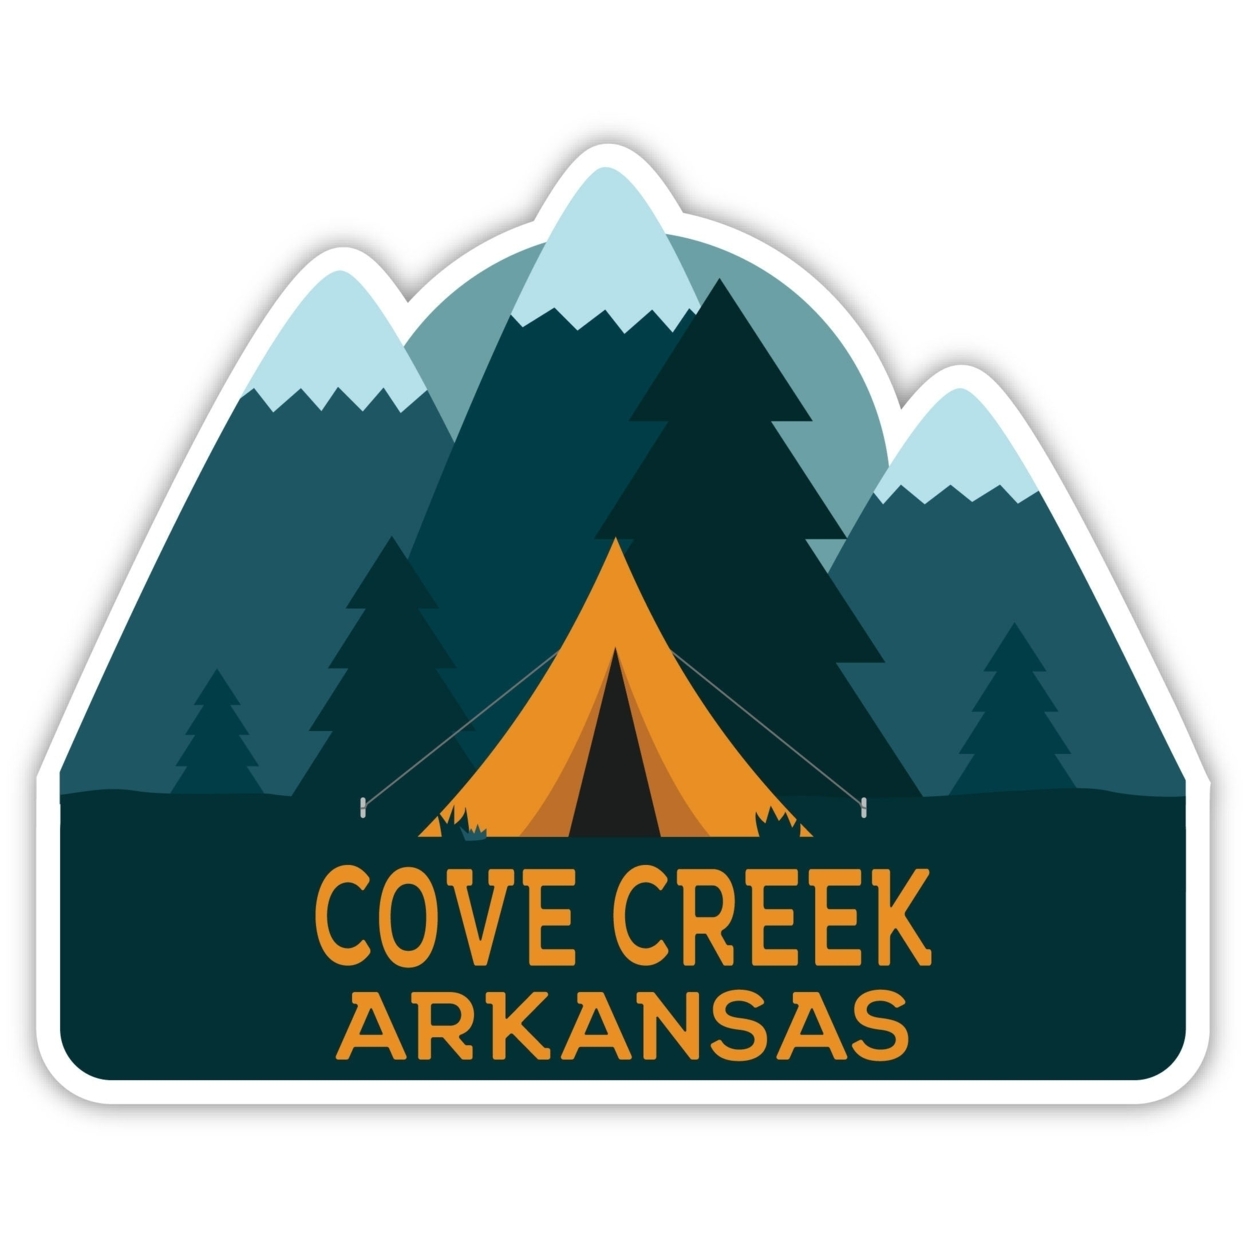 Cove Creek Arkansas Souvenir Decorative Stickers (Choose Theme And Size) - Single Unit, 12-Inch, Tent